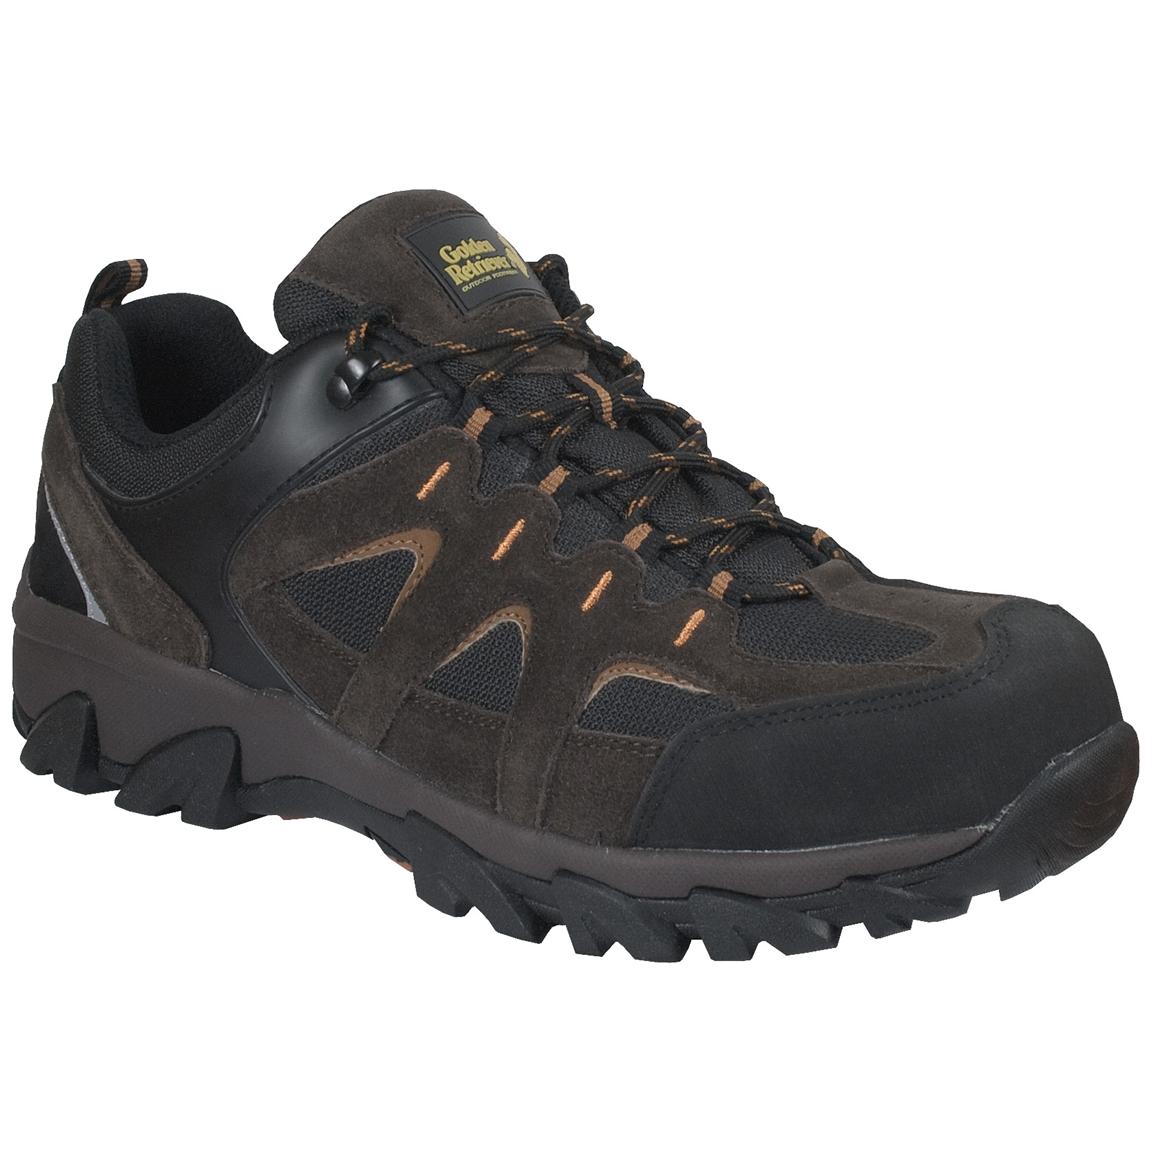 Men's Golden Retriever® Steel Toe Trailrunner Shoes - 235877, Work ...